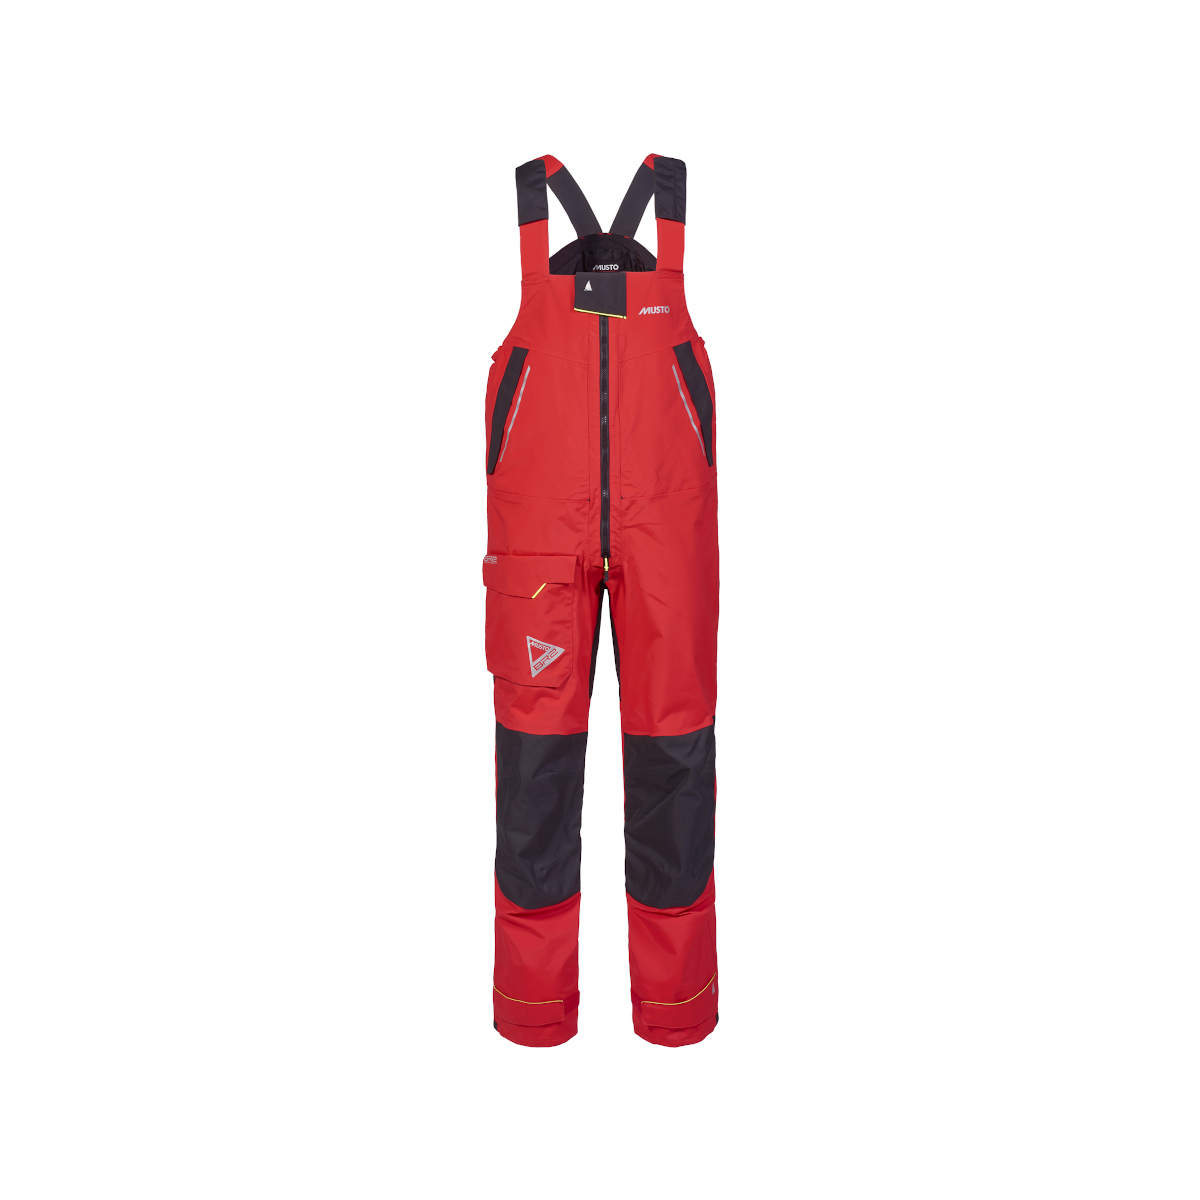 Musto BR2 pantalon de navigation offshore 2.0 homme rouge, taille S